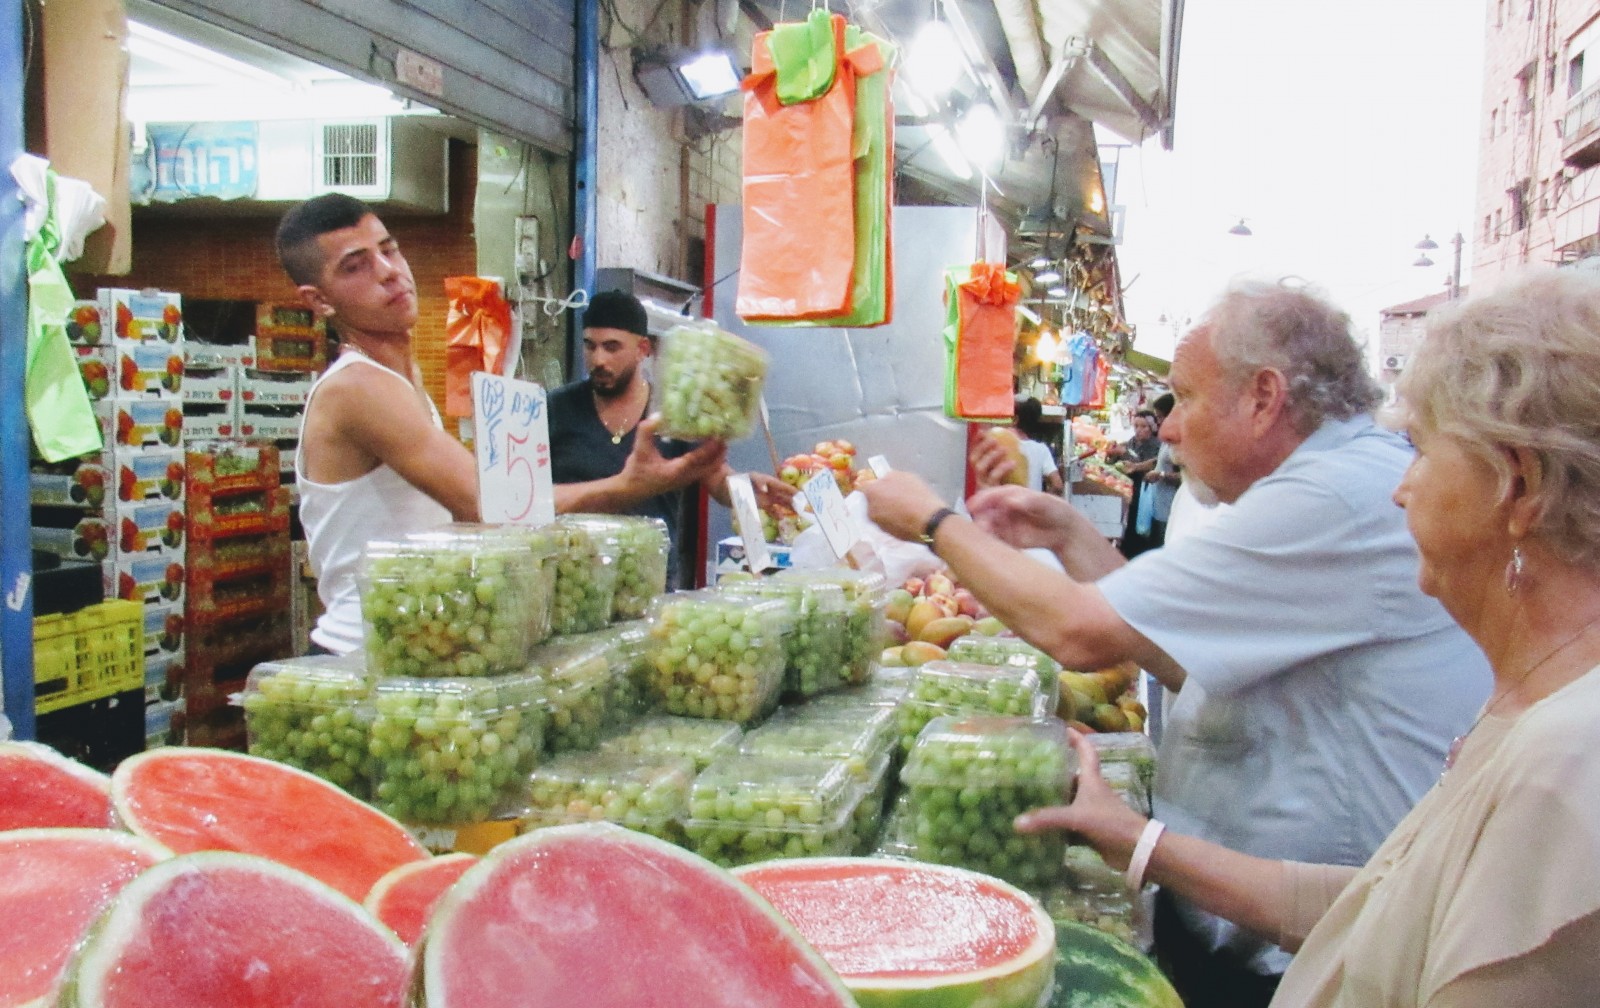 ביקוש והיצע משפיעים על מחירי המוצרים בשוק. צילום בשוק מחנה יהודה בירושלים, למצולמים אין קשר לכתבה. (צילום: קולמן פודהורצר)